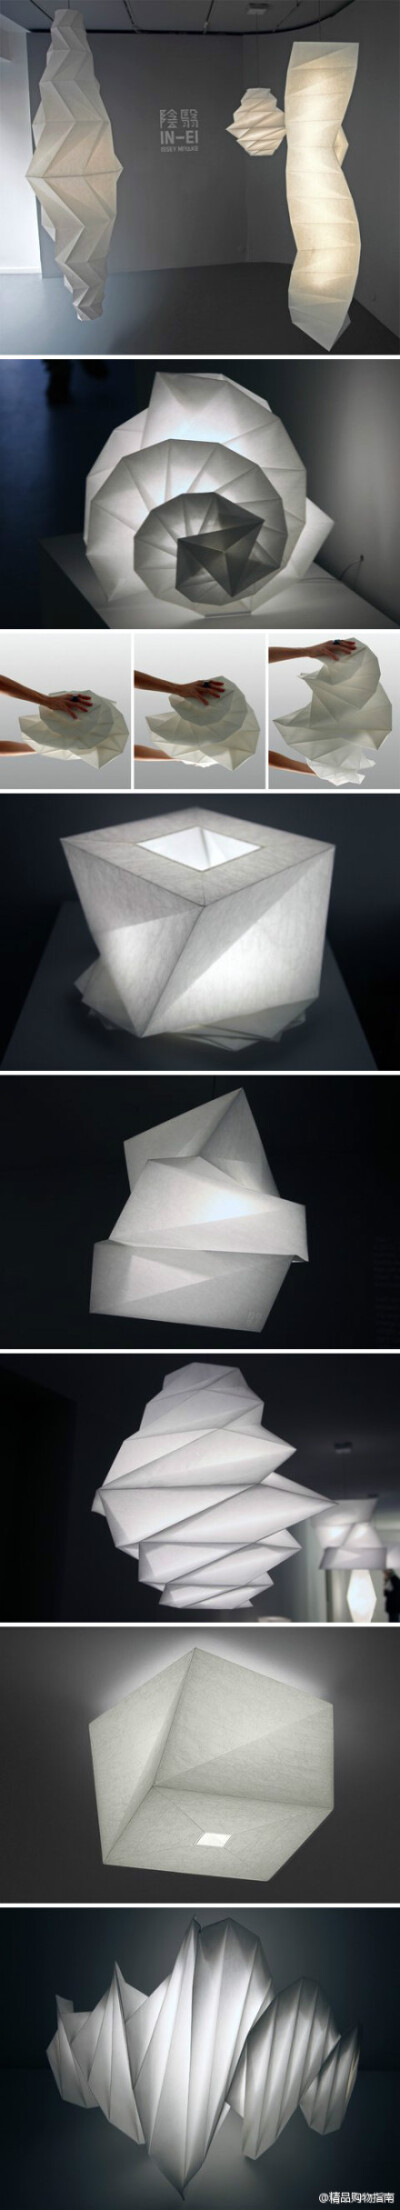 日本著名时装设计师三宅一生为意大利灯具品牌Artemide设计的可折叠的“in-ei”灯具。该系列风格明显，很容易让人联想到三宅一生的“褶皱”系列，极具东方美，灯具全部用折叠布料制作，展开后就形成了一个大灯罩，通…